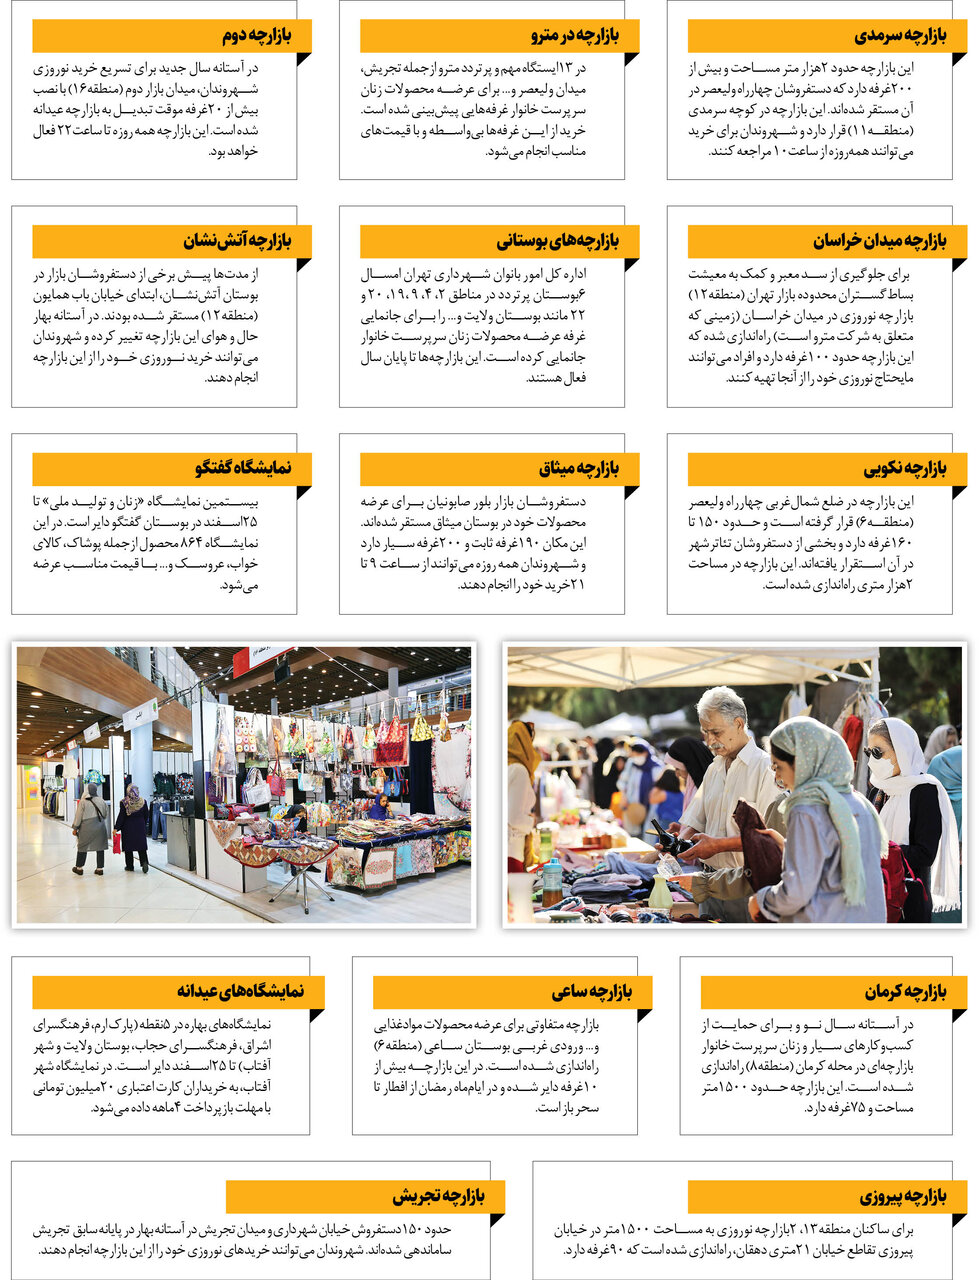 در آستانه فصل بهار و سال نو شهرداری تهران اقدام به راه اندازی بازارچه و نمایشگاه نوروزی کرده است که شهروندان می‌توانند خرید عیدانه خود را از آنها انجام دهند.